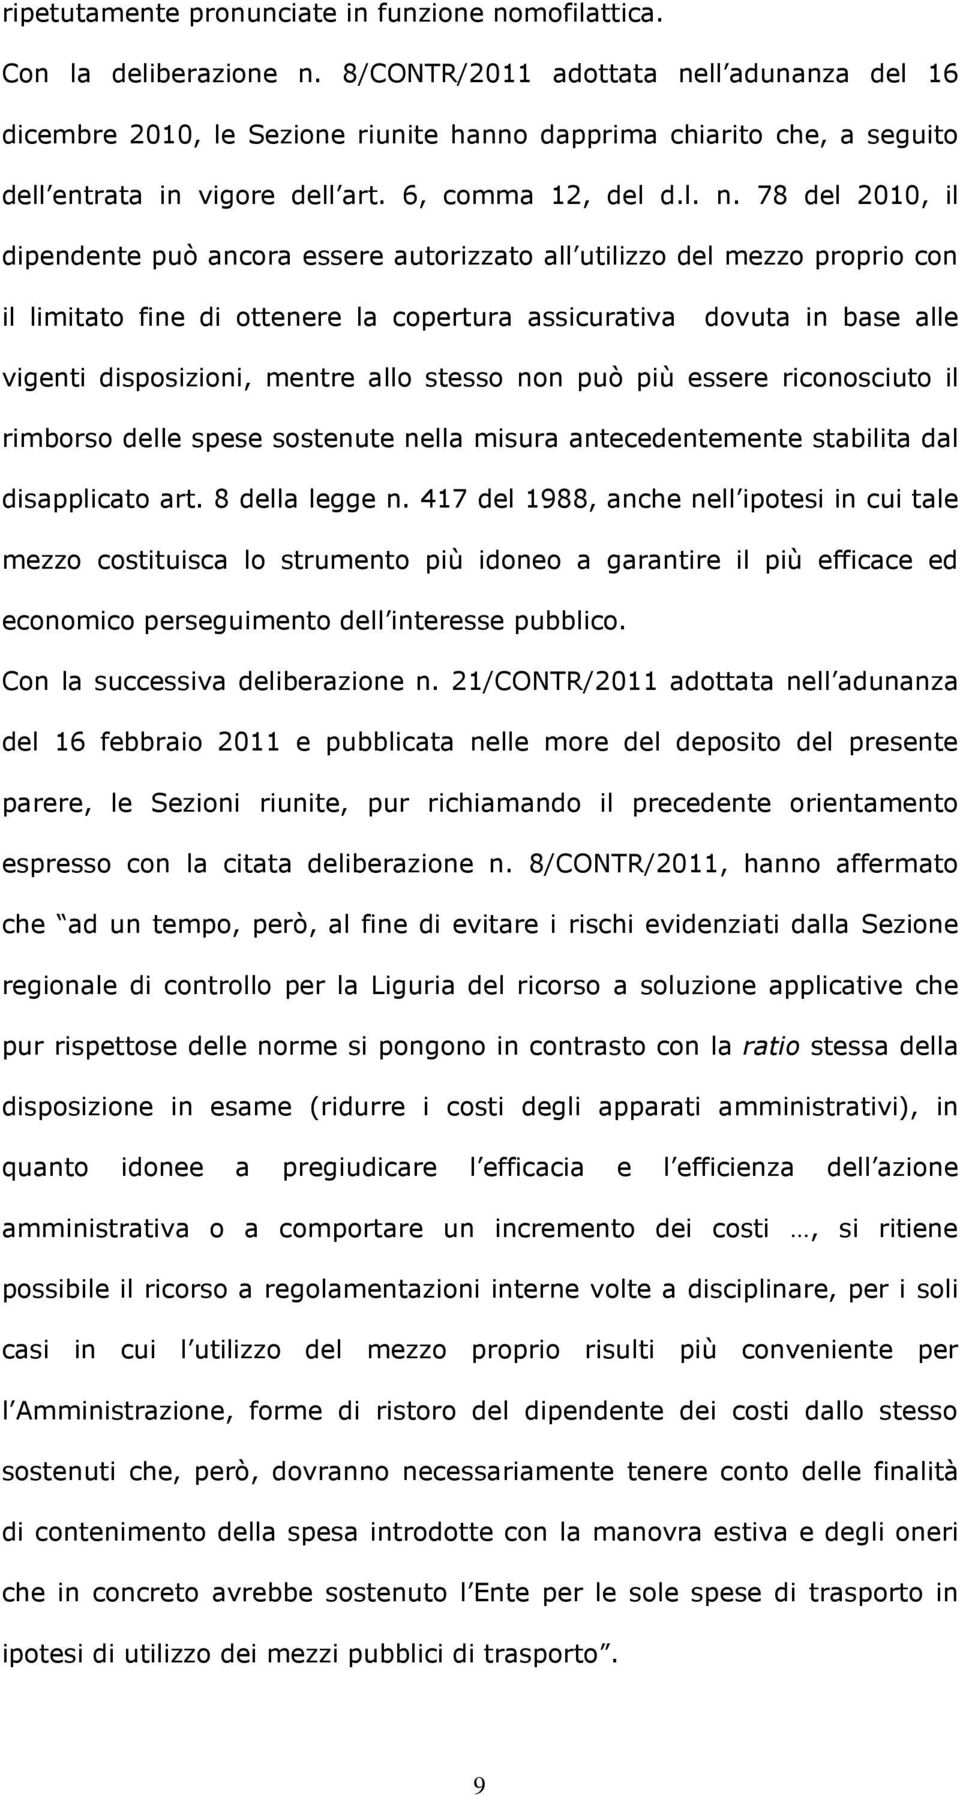 ll adunanza del 16 dicembre 2010, le Sezione riunite hanno dapprima chiarito che, a seguito dell entrata in vigore dell art. 6, comma 12, del d.l. n.